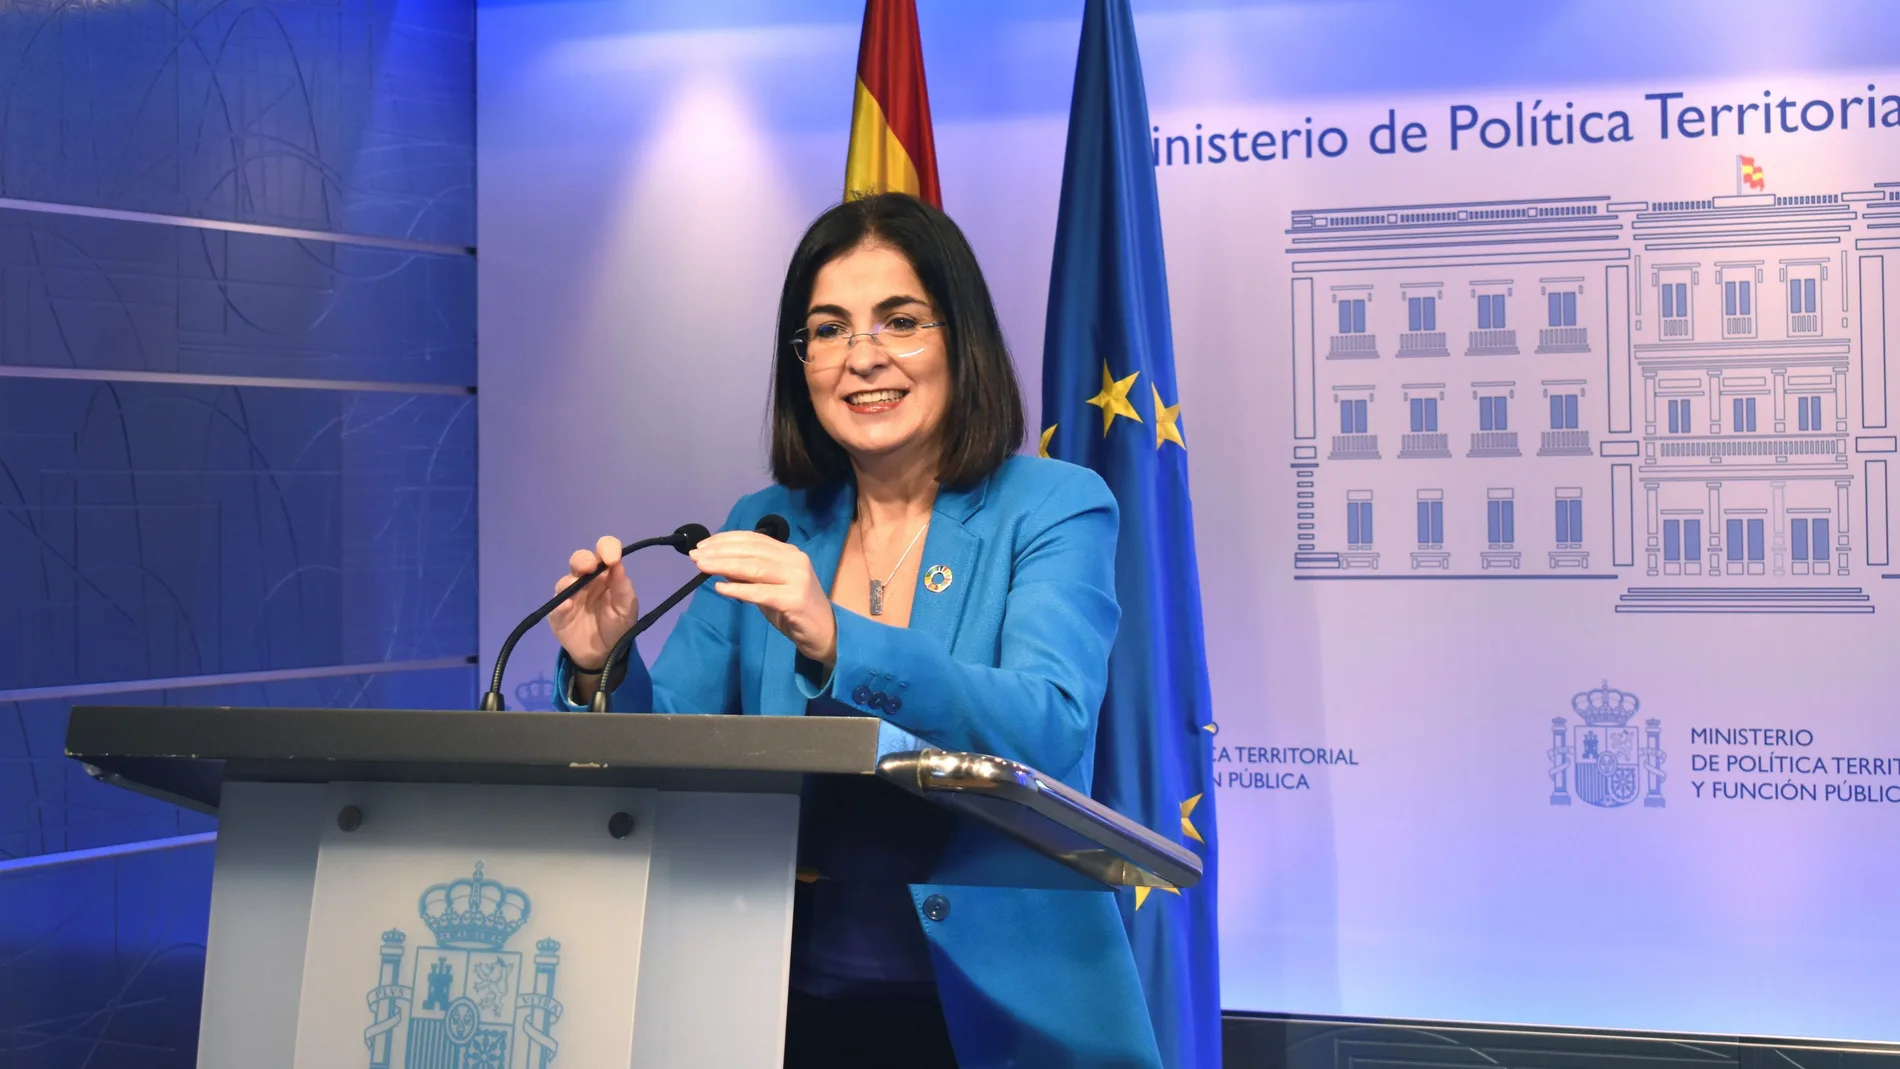 La ministra de Política Territorial y Función Pública, Carolina Darias, compareció vía telemática para anunciar los presupuestos de su Ministerio